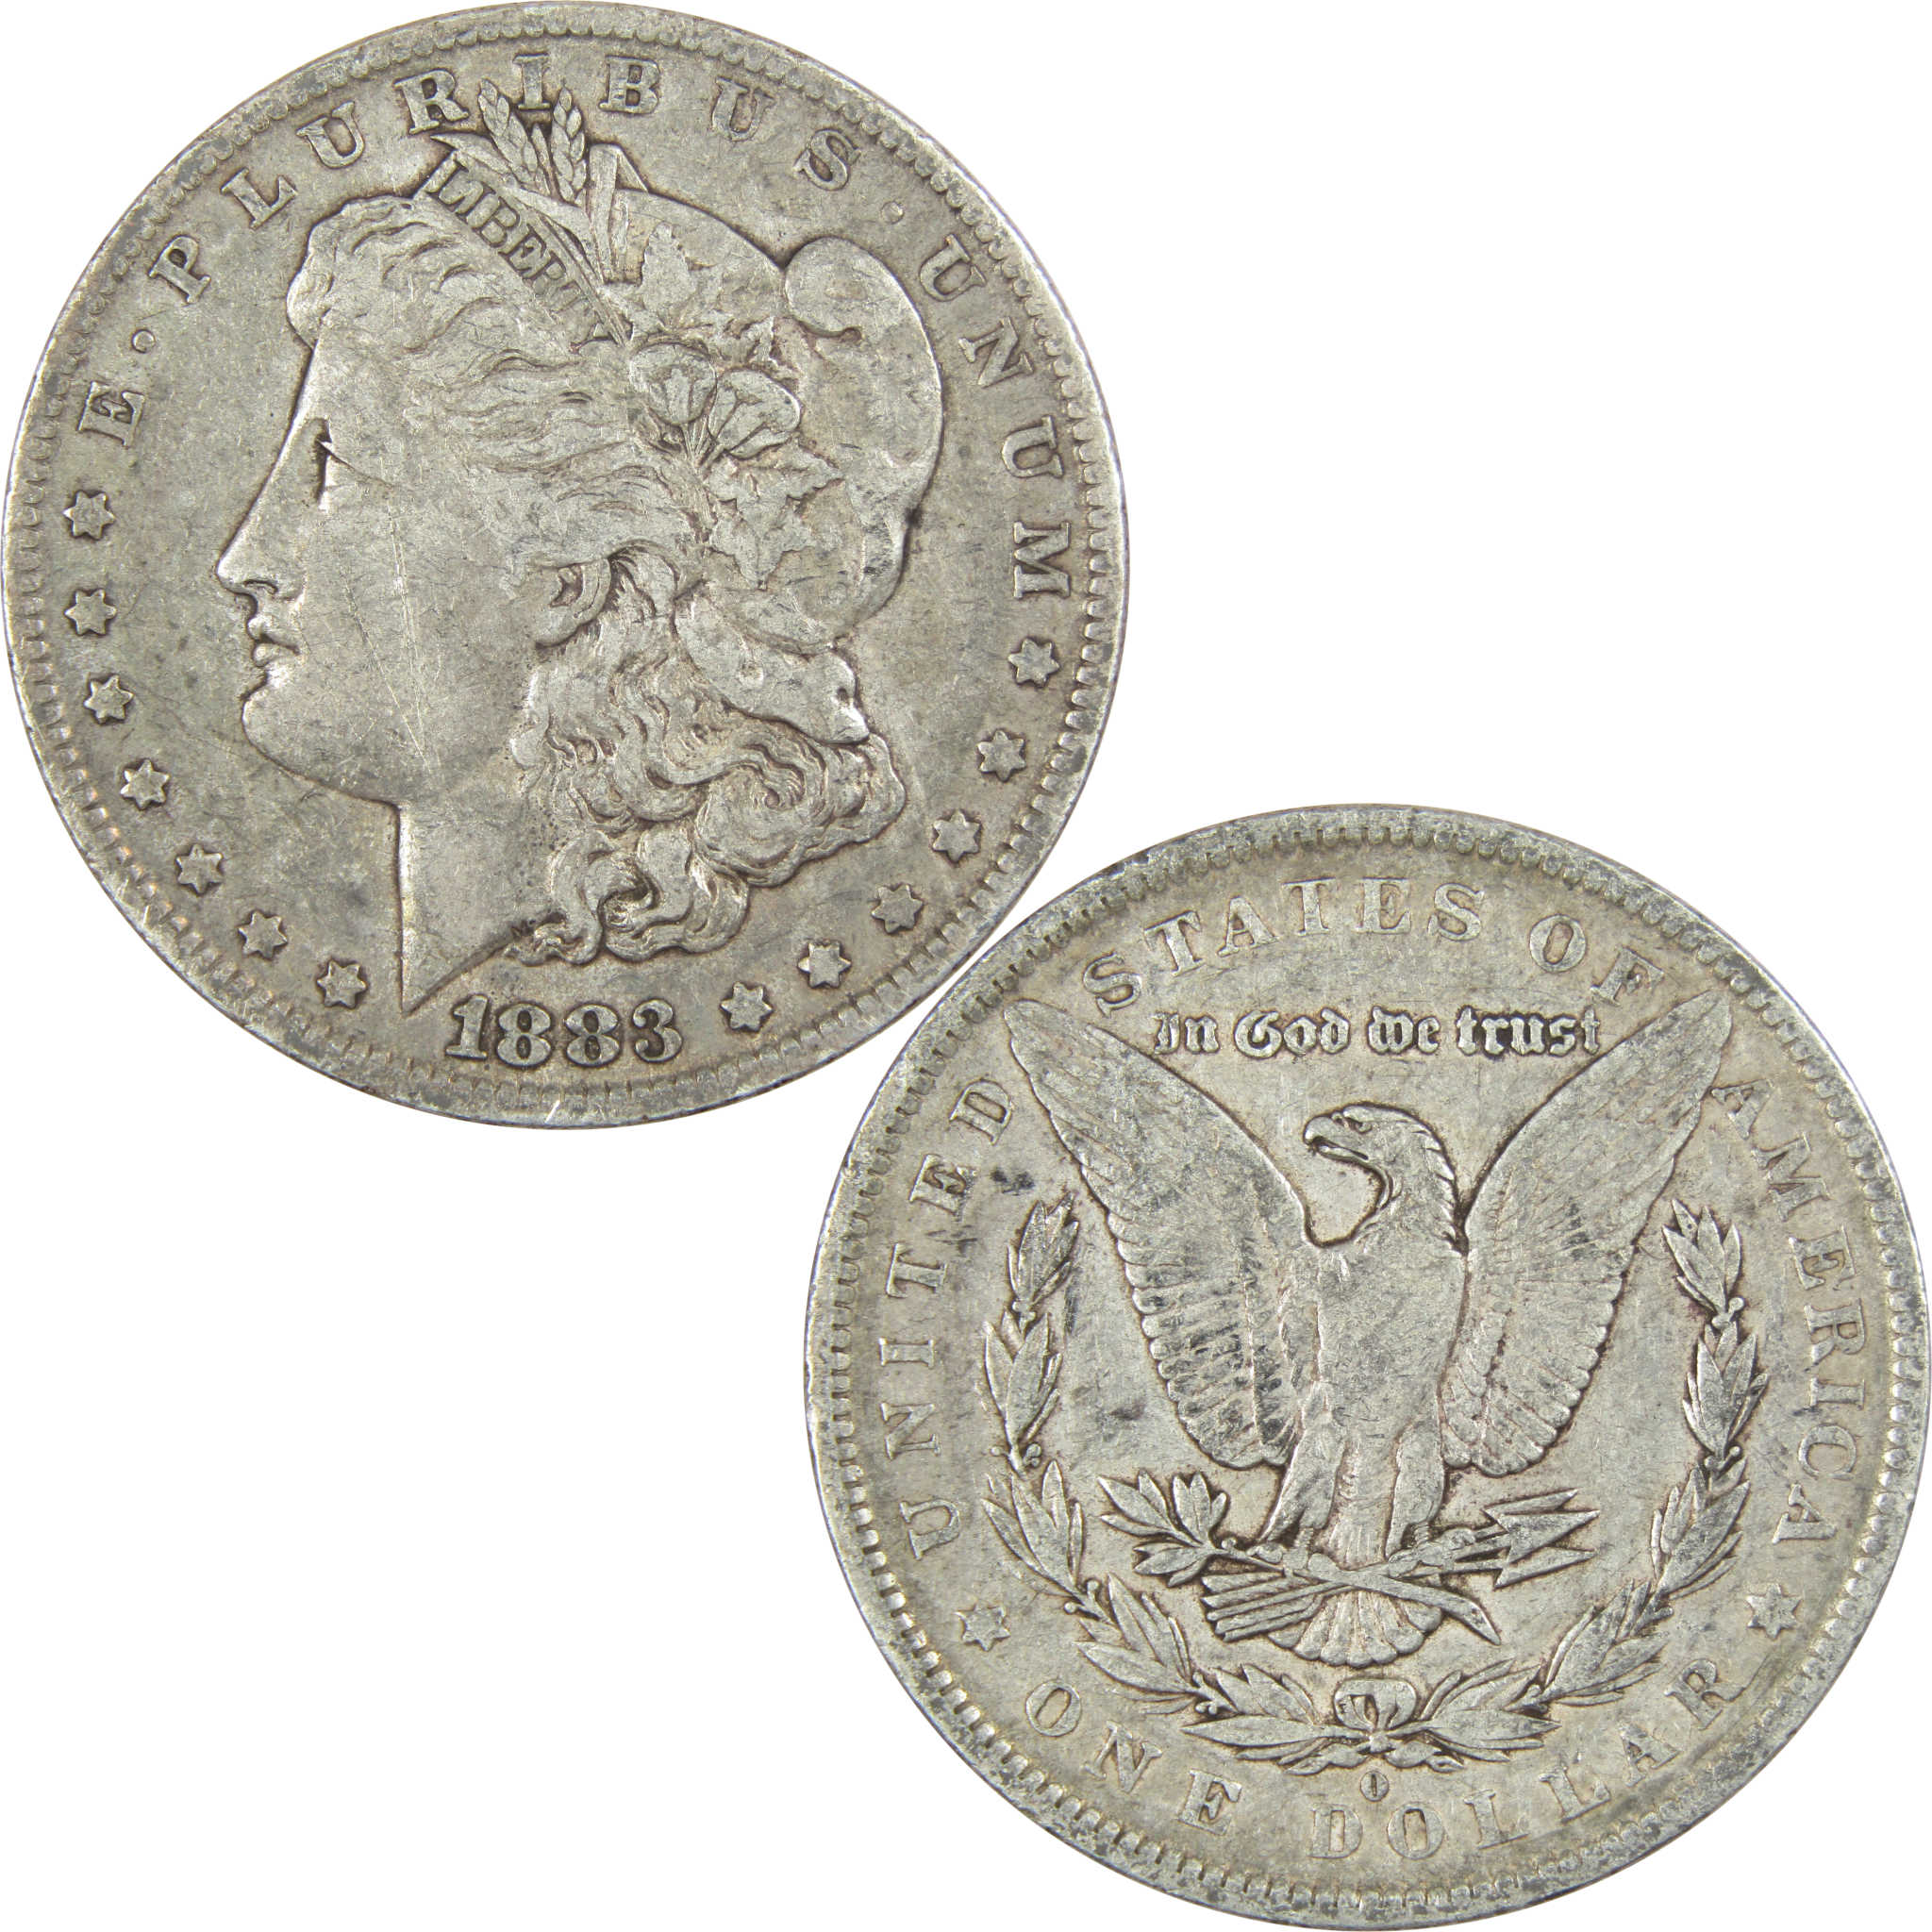 1883 O Morgan Dollar VF Very Fine 90% Silver $1 US Coin Collectible - Morgan coin - Morgan silver dollar - Morgan silver dollar for sale - Profile Coins &amp; Collectibles